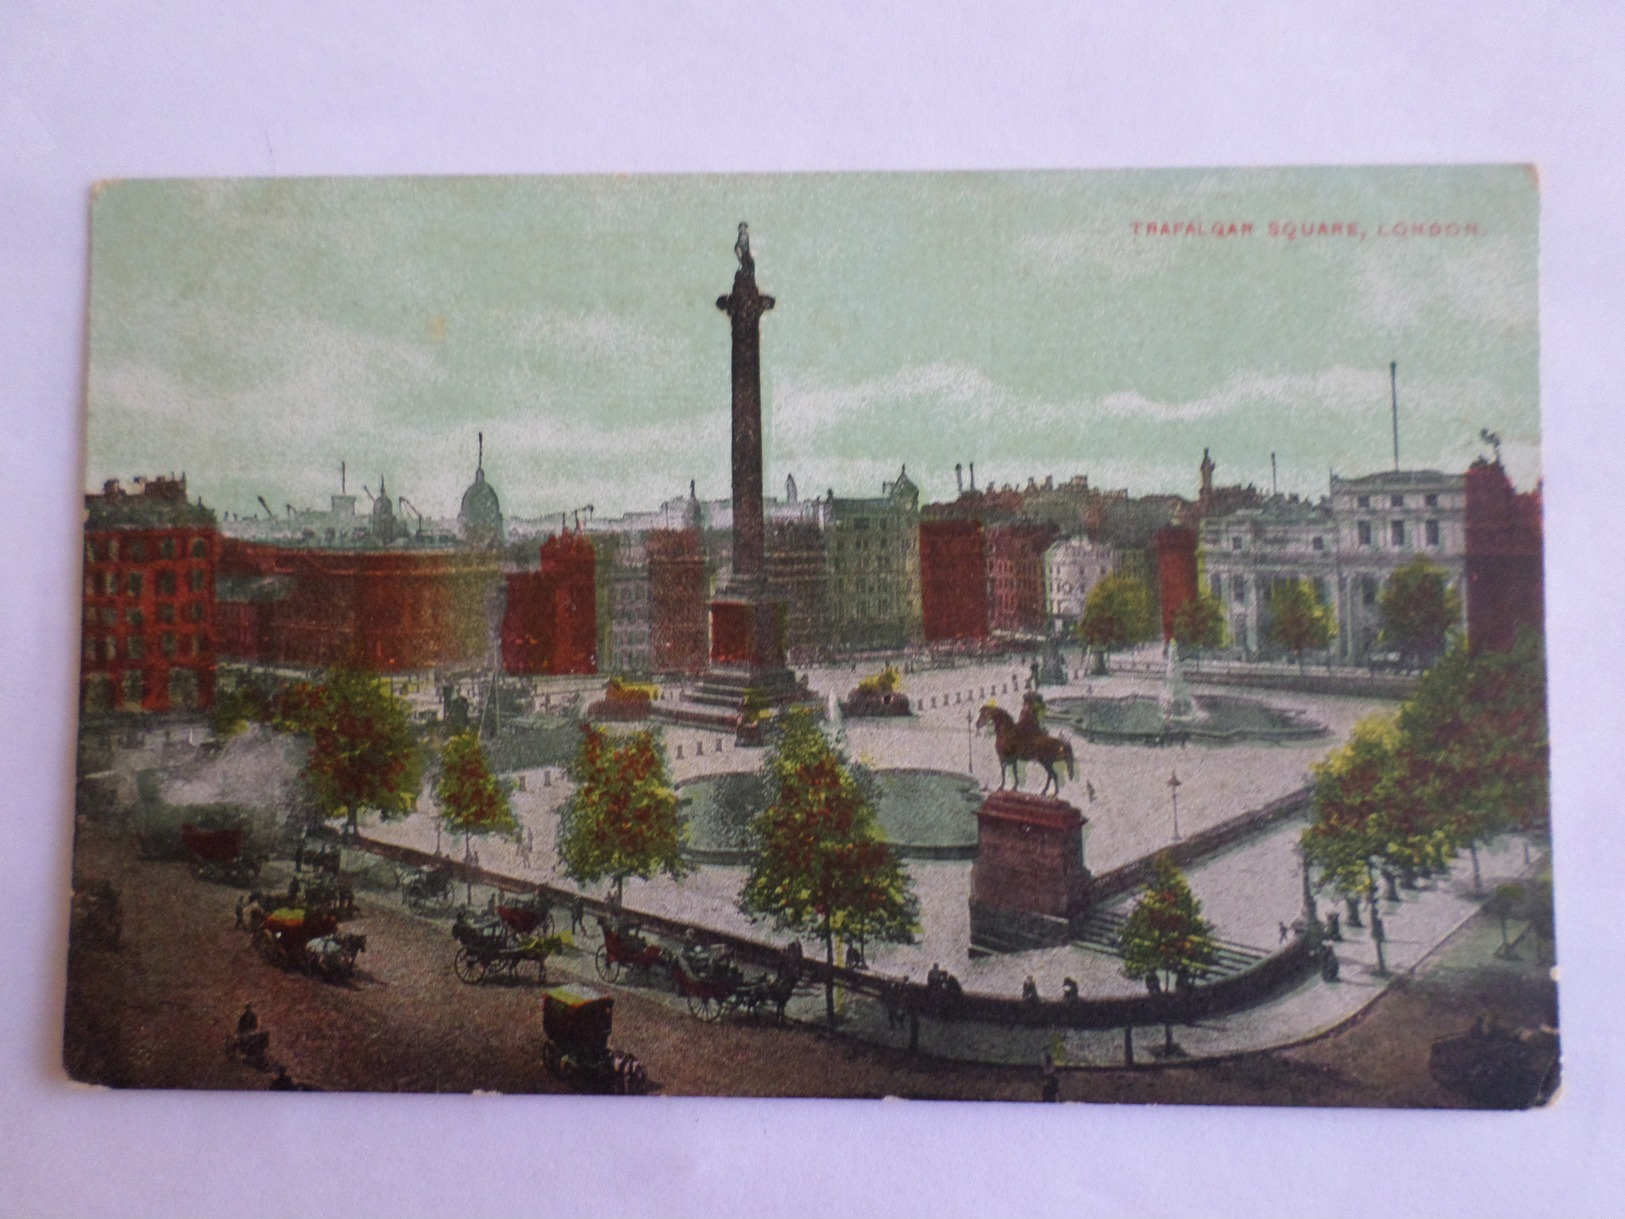 Trafalgar Square London - Trafalgar Square